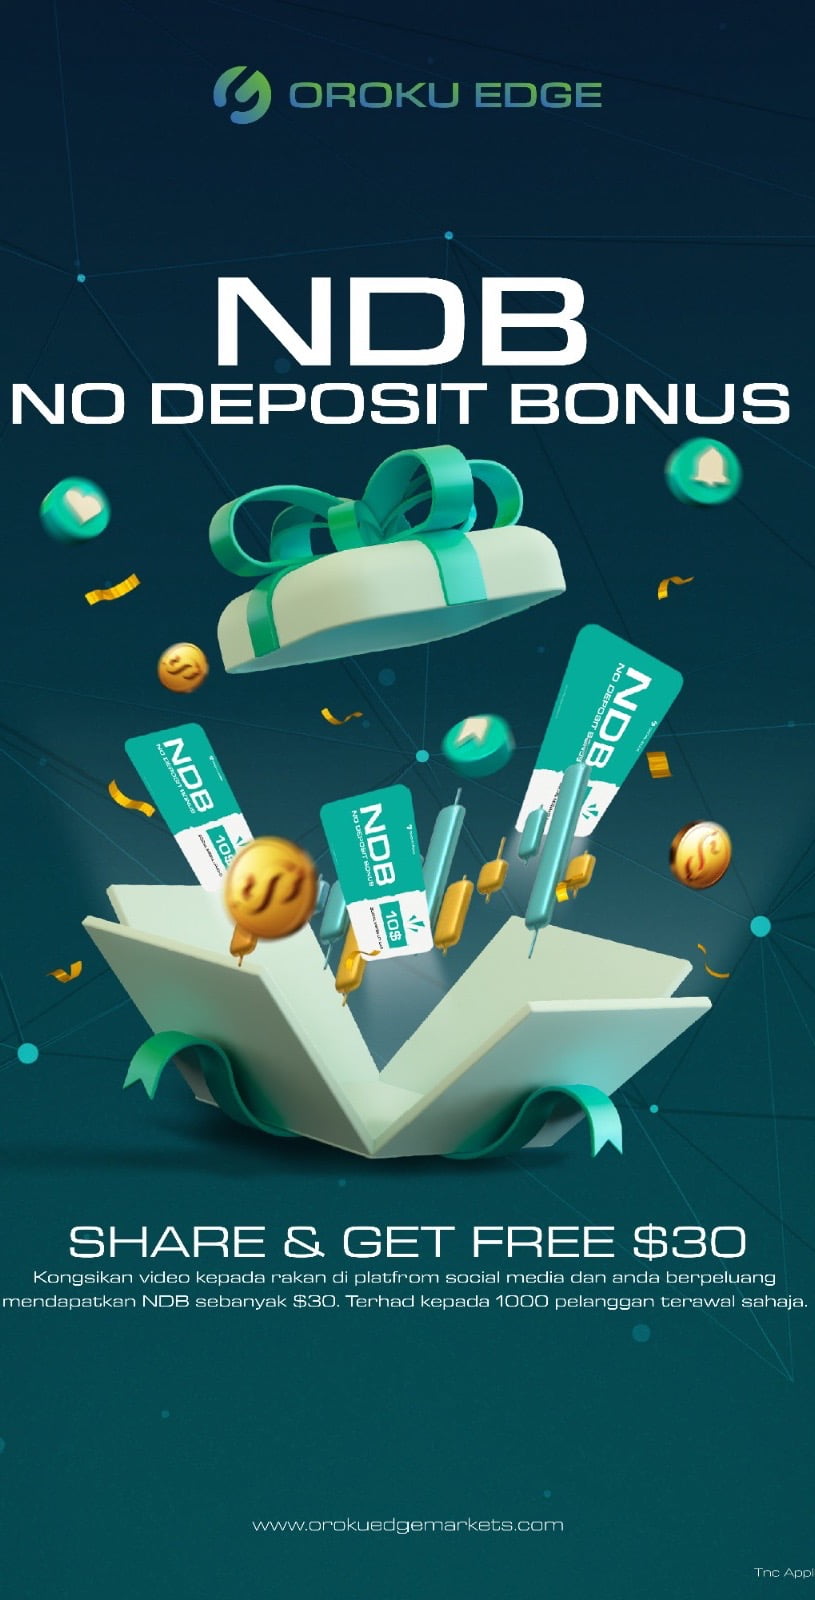 Oroku Edge No Deposit Bonus Information